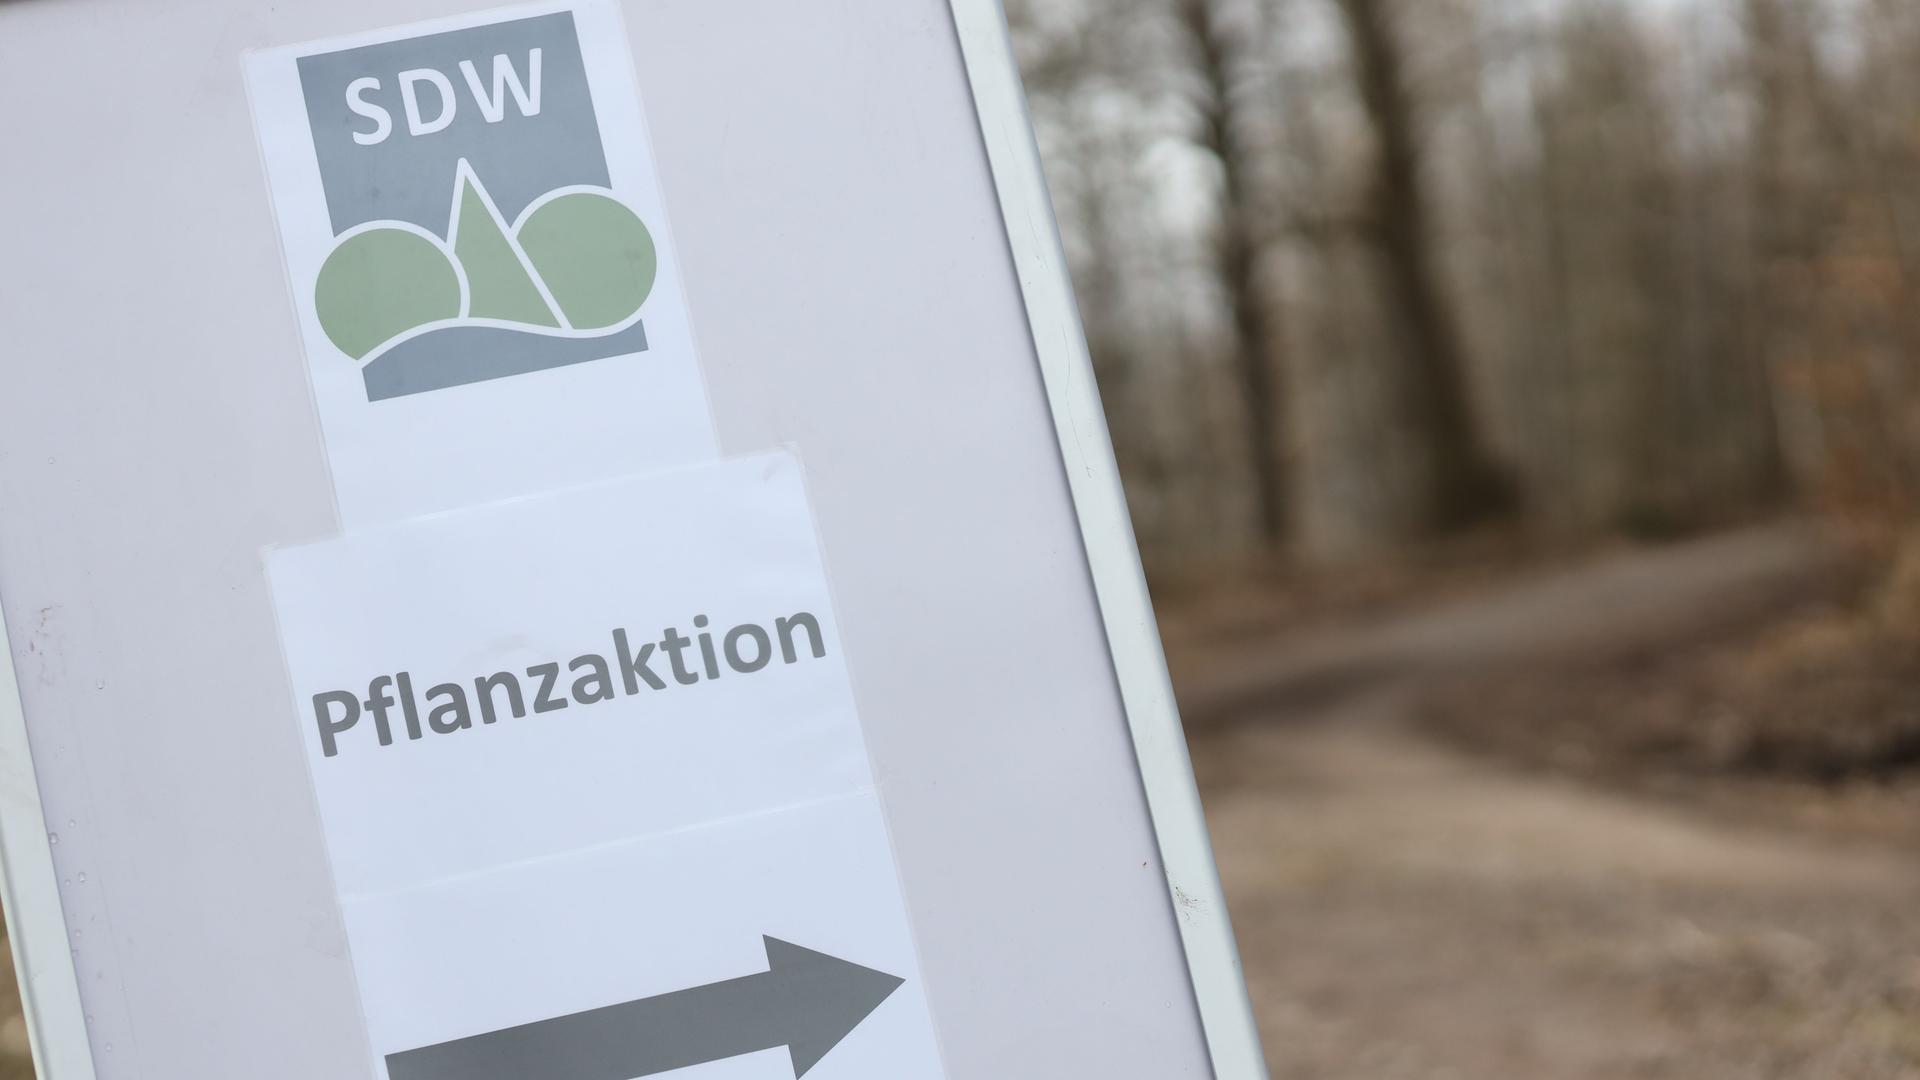 Ein Hinweisschild mit der Aufschrift "Pflanzaktion" unter dem Logo der Schutzgemeinschaft Deutscher Wald" steht an der Zufahrt zum Stadtwaldgebiet der Stadt Wernigerode. Sie zählt zu großen kommunalen Waldbesitzern in Deutschland.